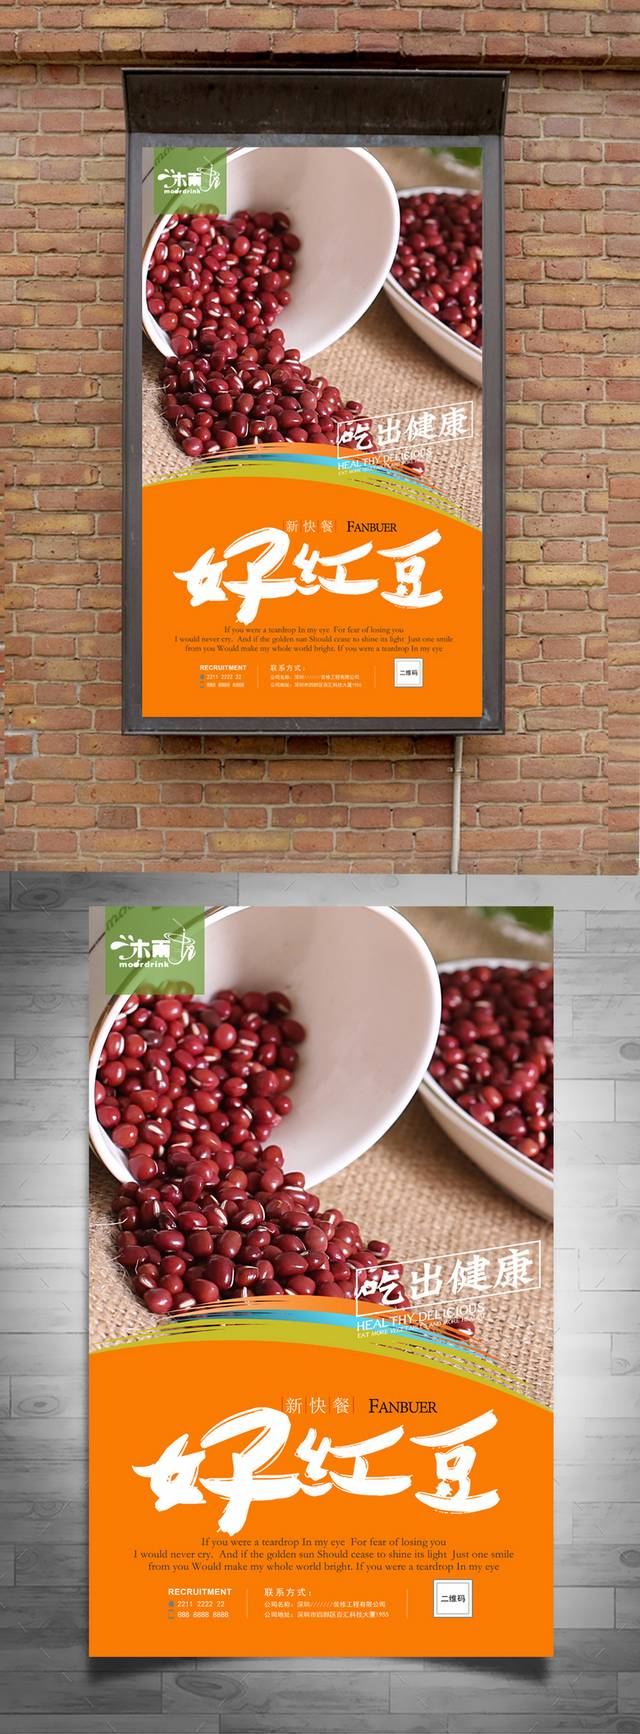 高清红豆宣传海报设计